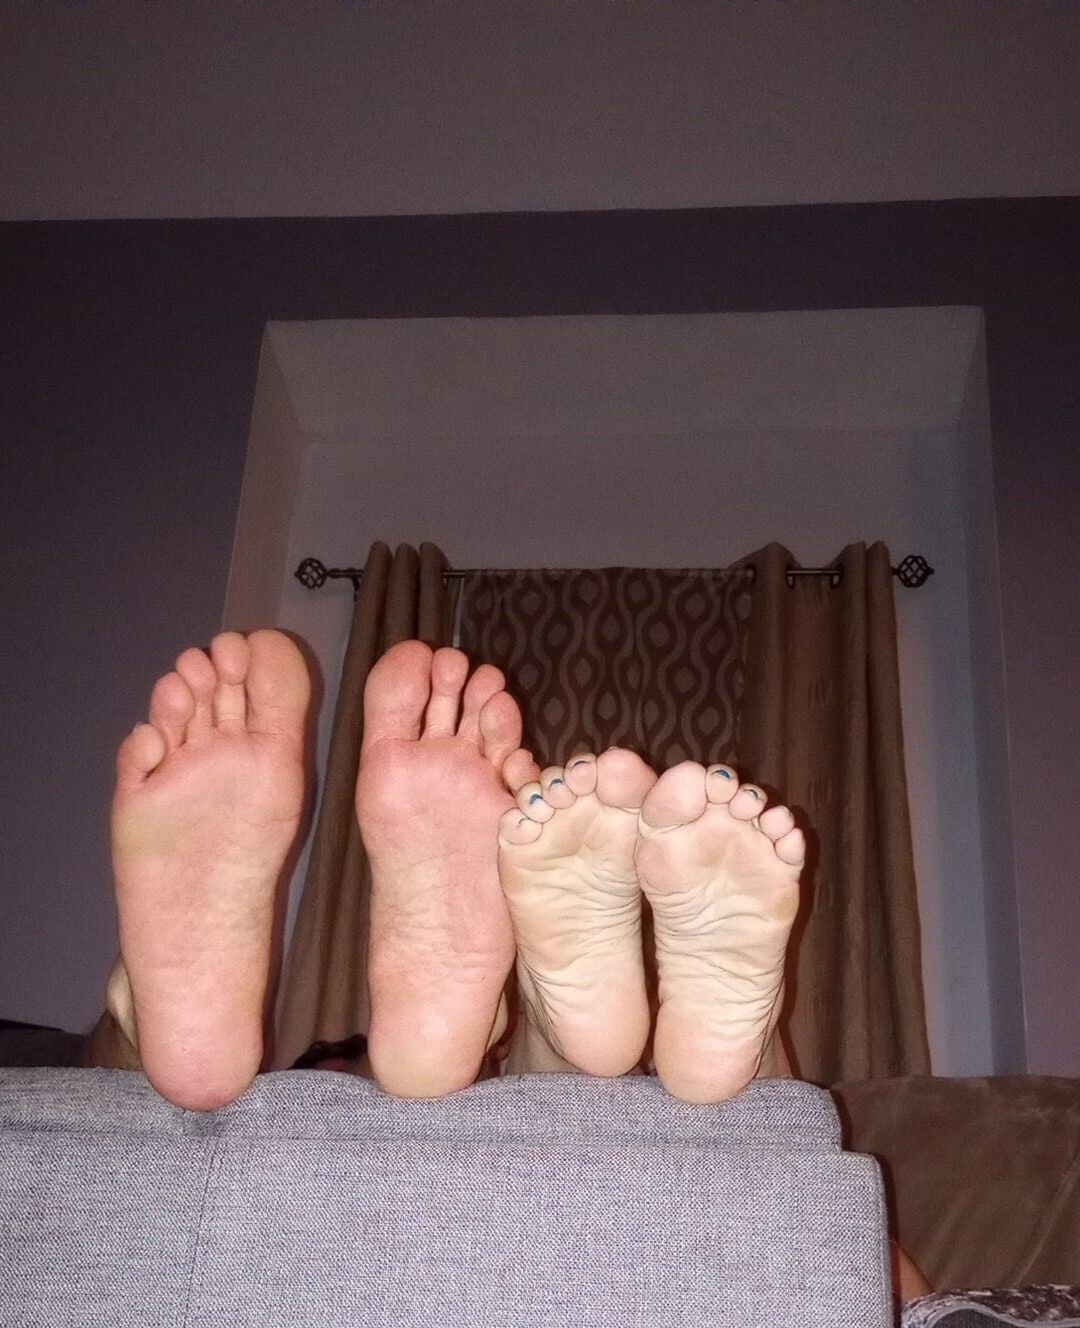 Do you like our feet together #11